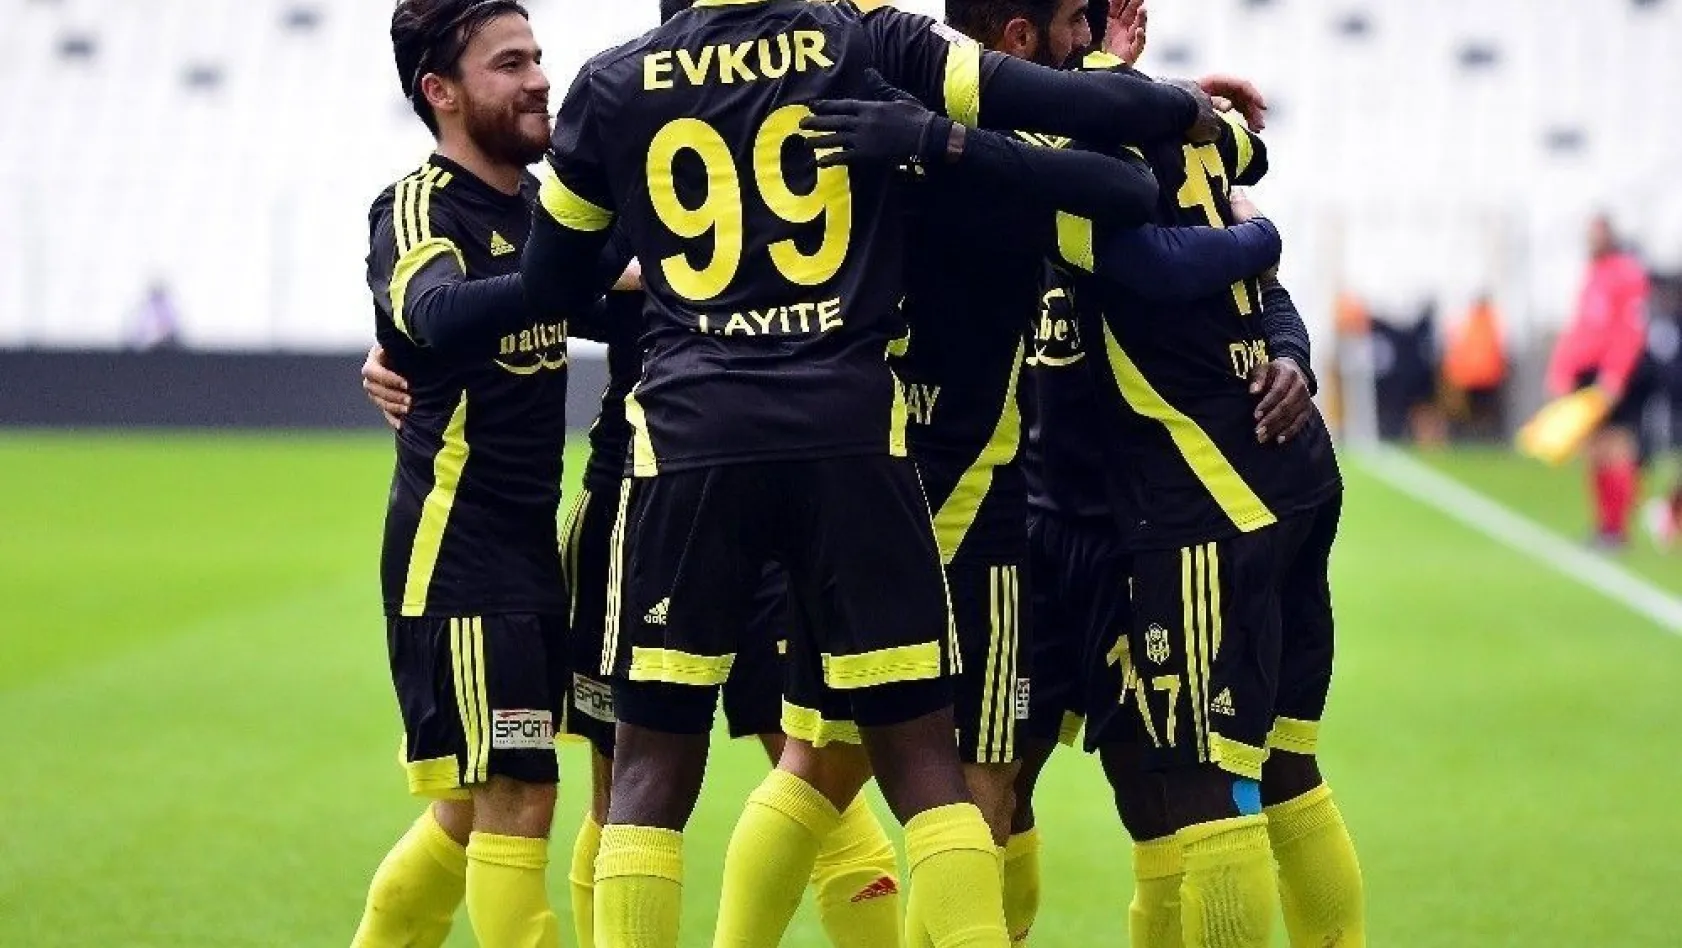 Evkur Yeni Malatyaspor - Gaziantep B.B. Spor maçının programında değişiklik
